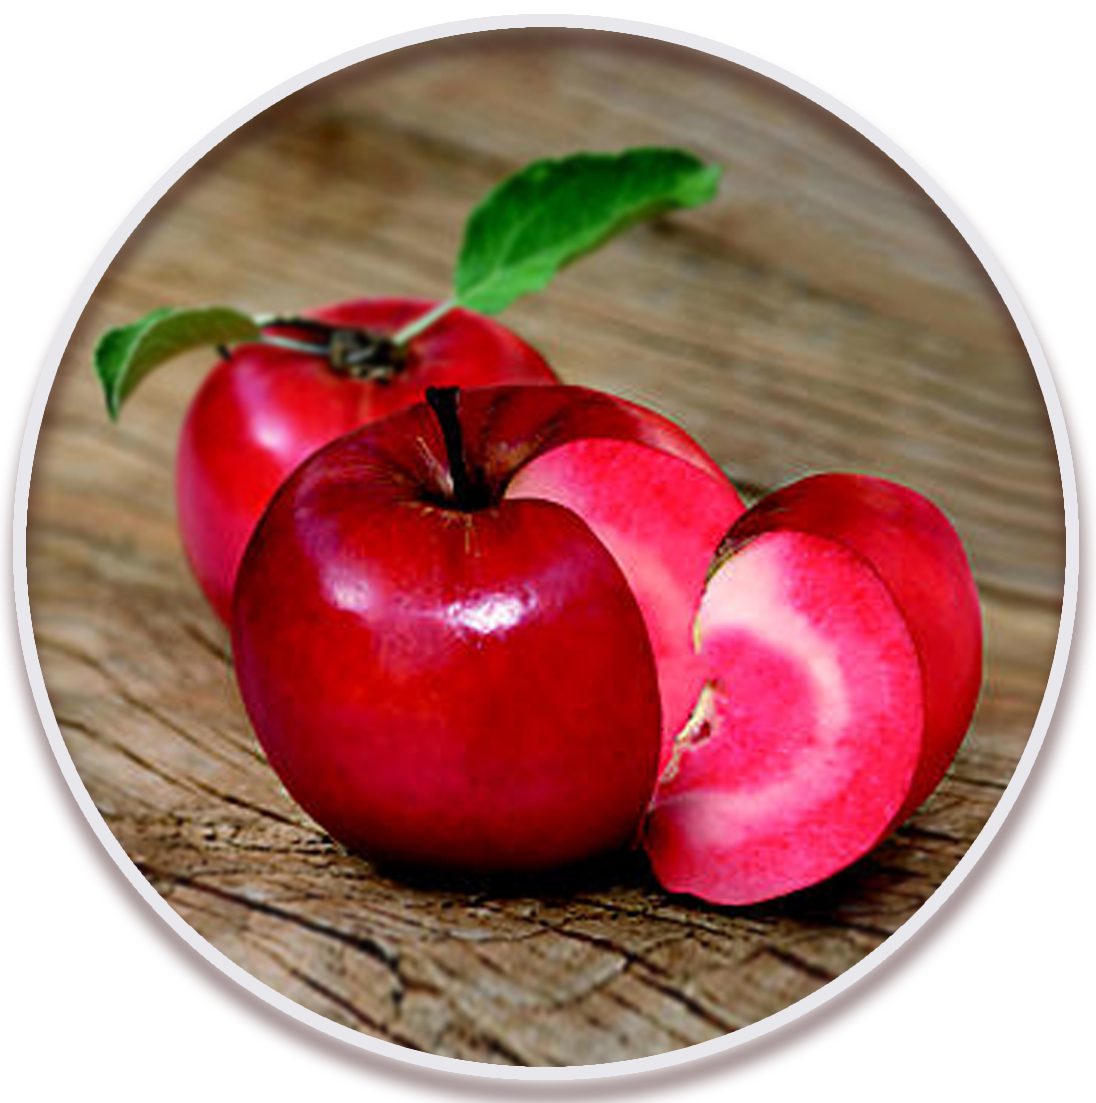 سیب تو سرخ (Redlove Apple)